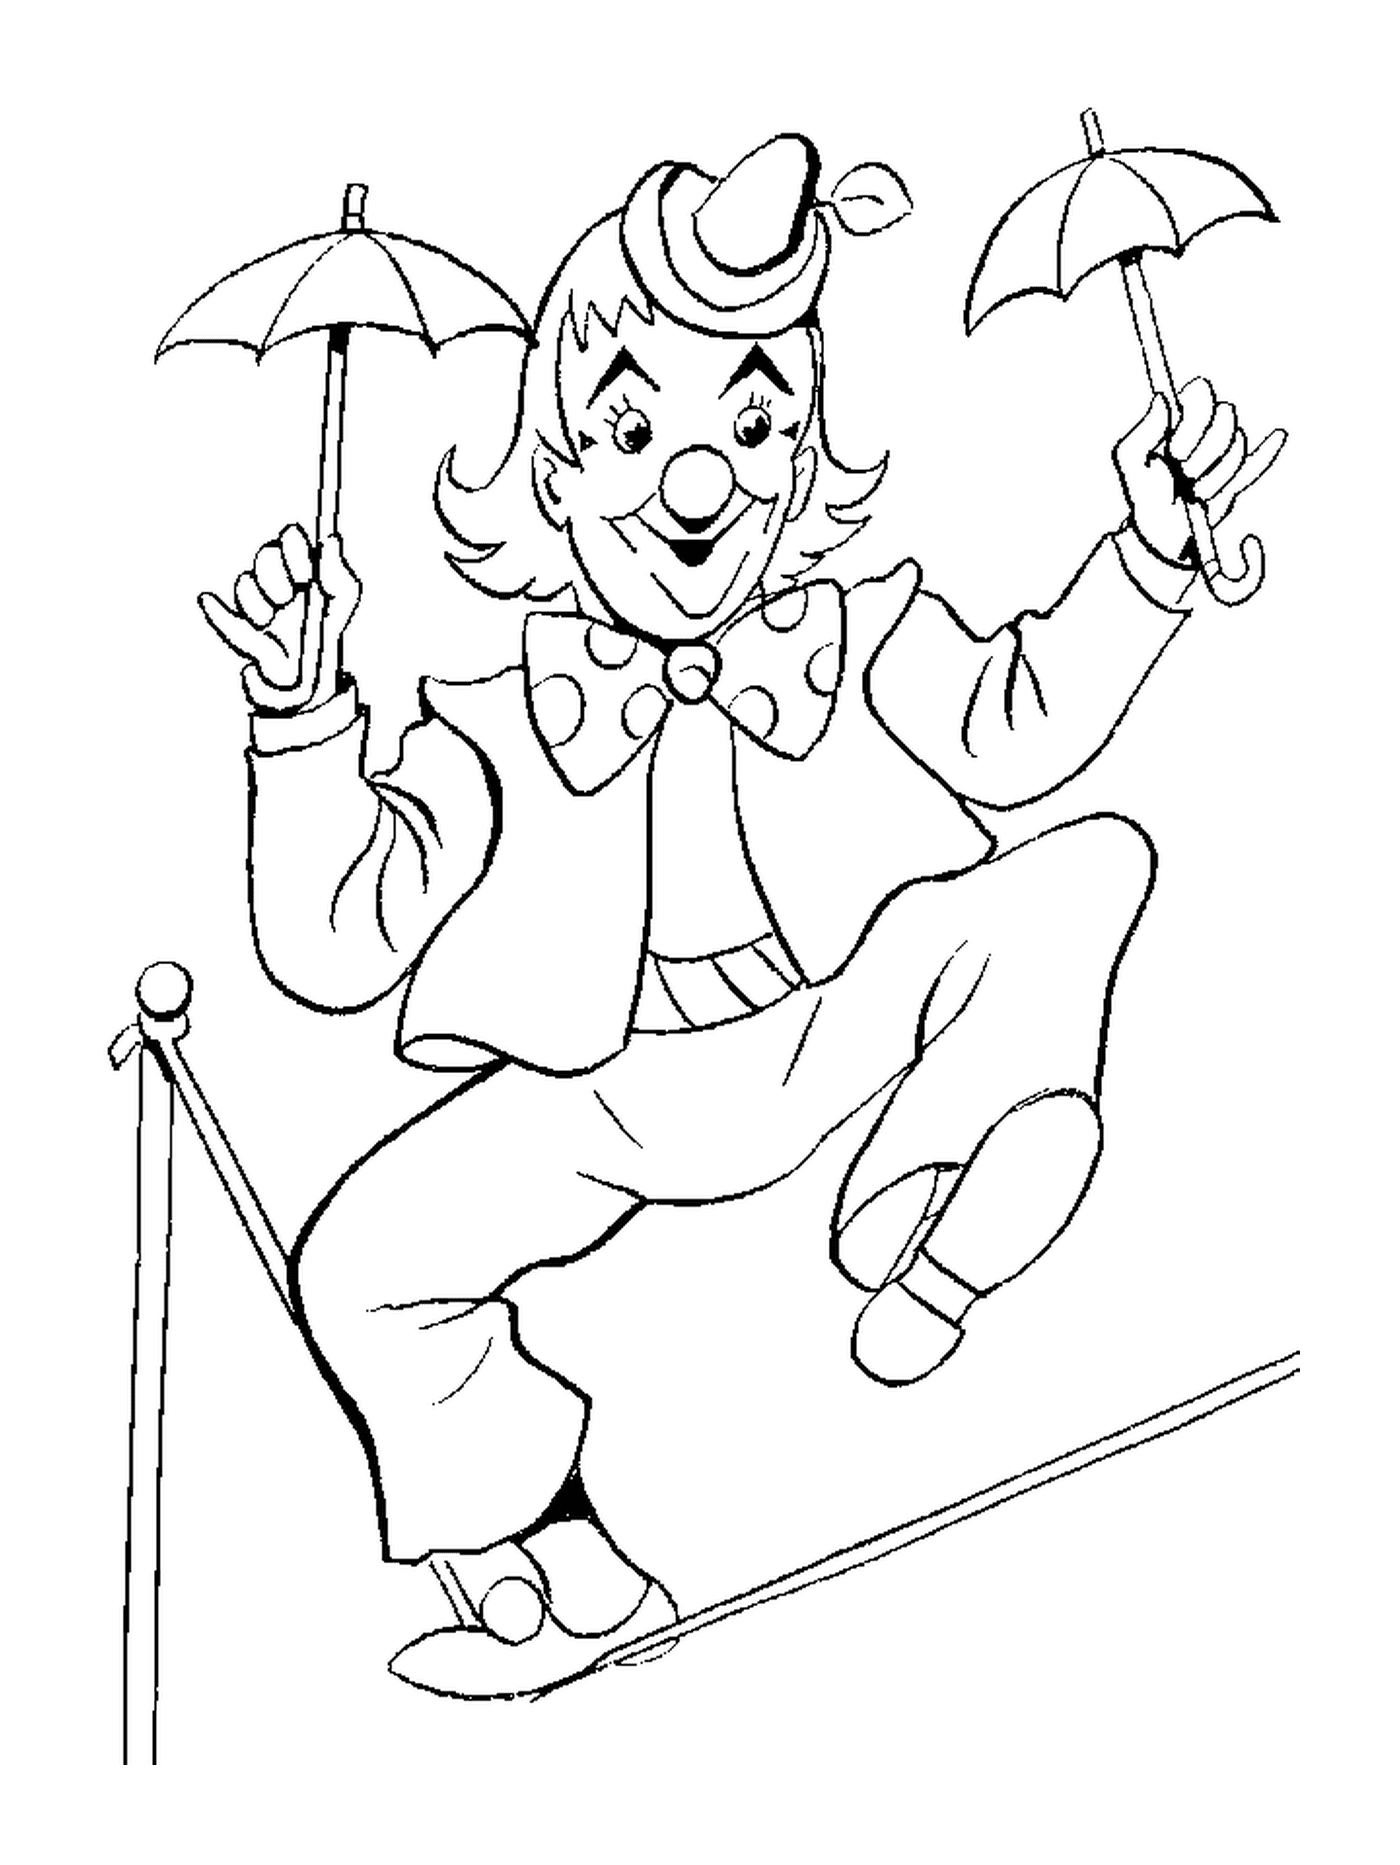  Ein Clown im Gleichgewicht auf einem Draht für den Zirkus 